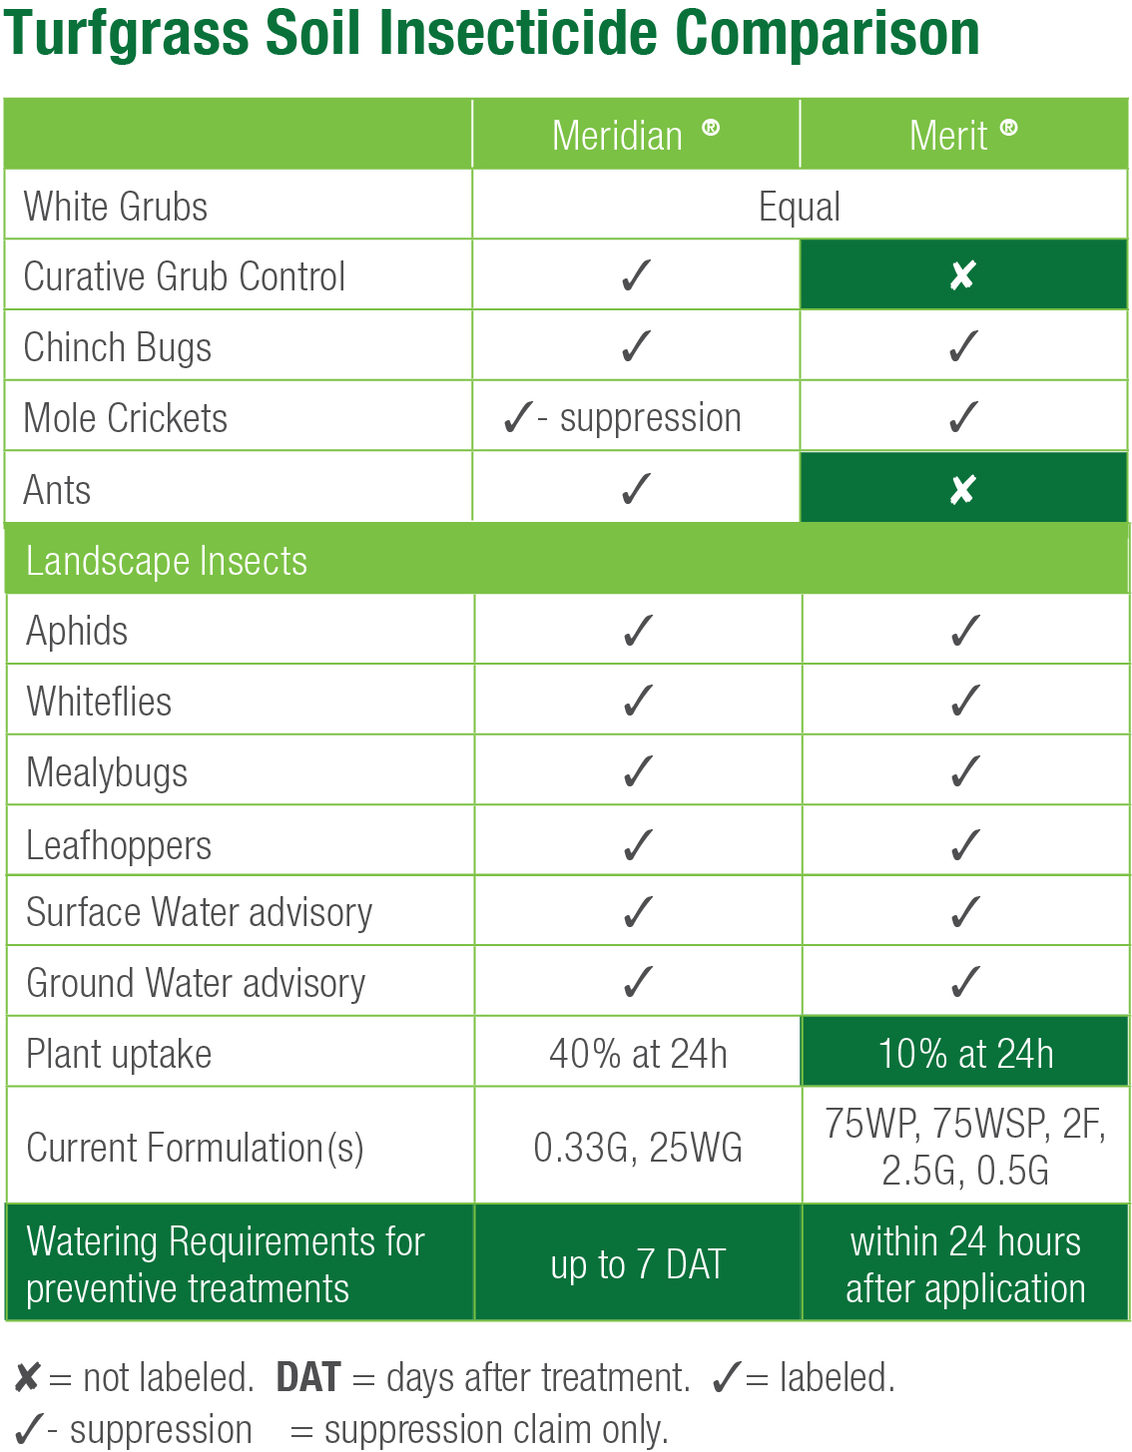 Turfgrass soil insecticide comparison